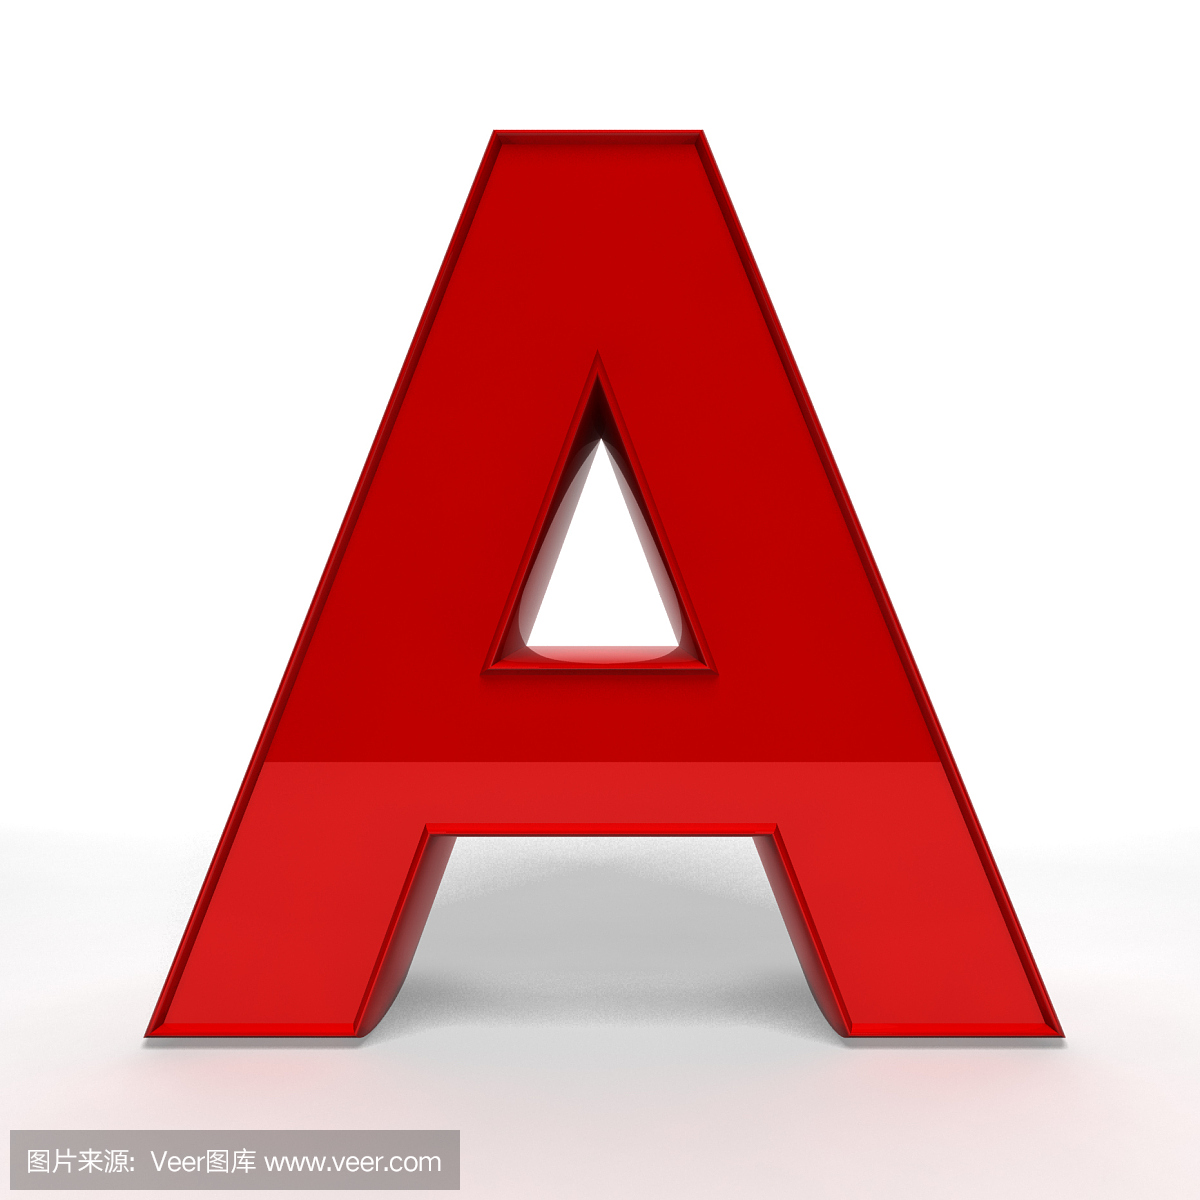 英文字母A,A,A字母,字母A的